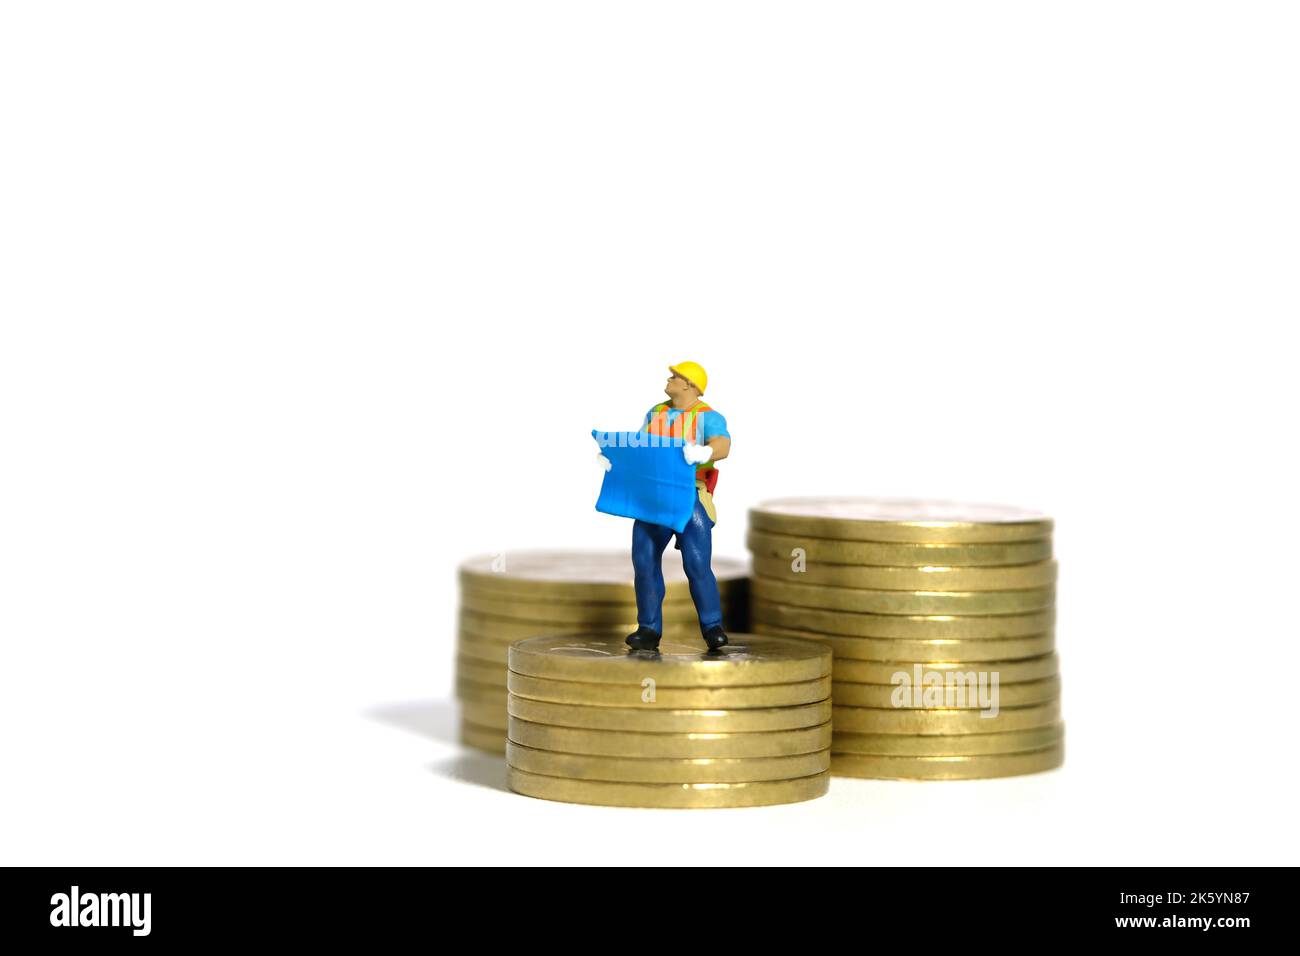 Miniatur Menschen Spielzeug Figur Fotografie. Projektbudgetkonzept. Ein Bauarbeiter mit einem Blaupause-Gebäude, das über dem Goldmünzenstapel steht. Stockfoto